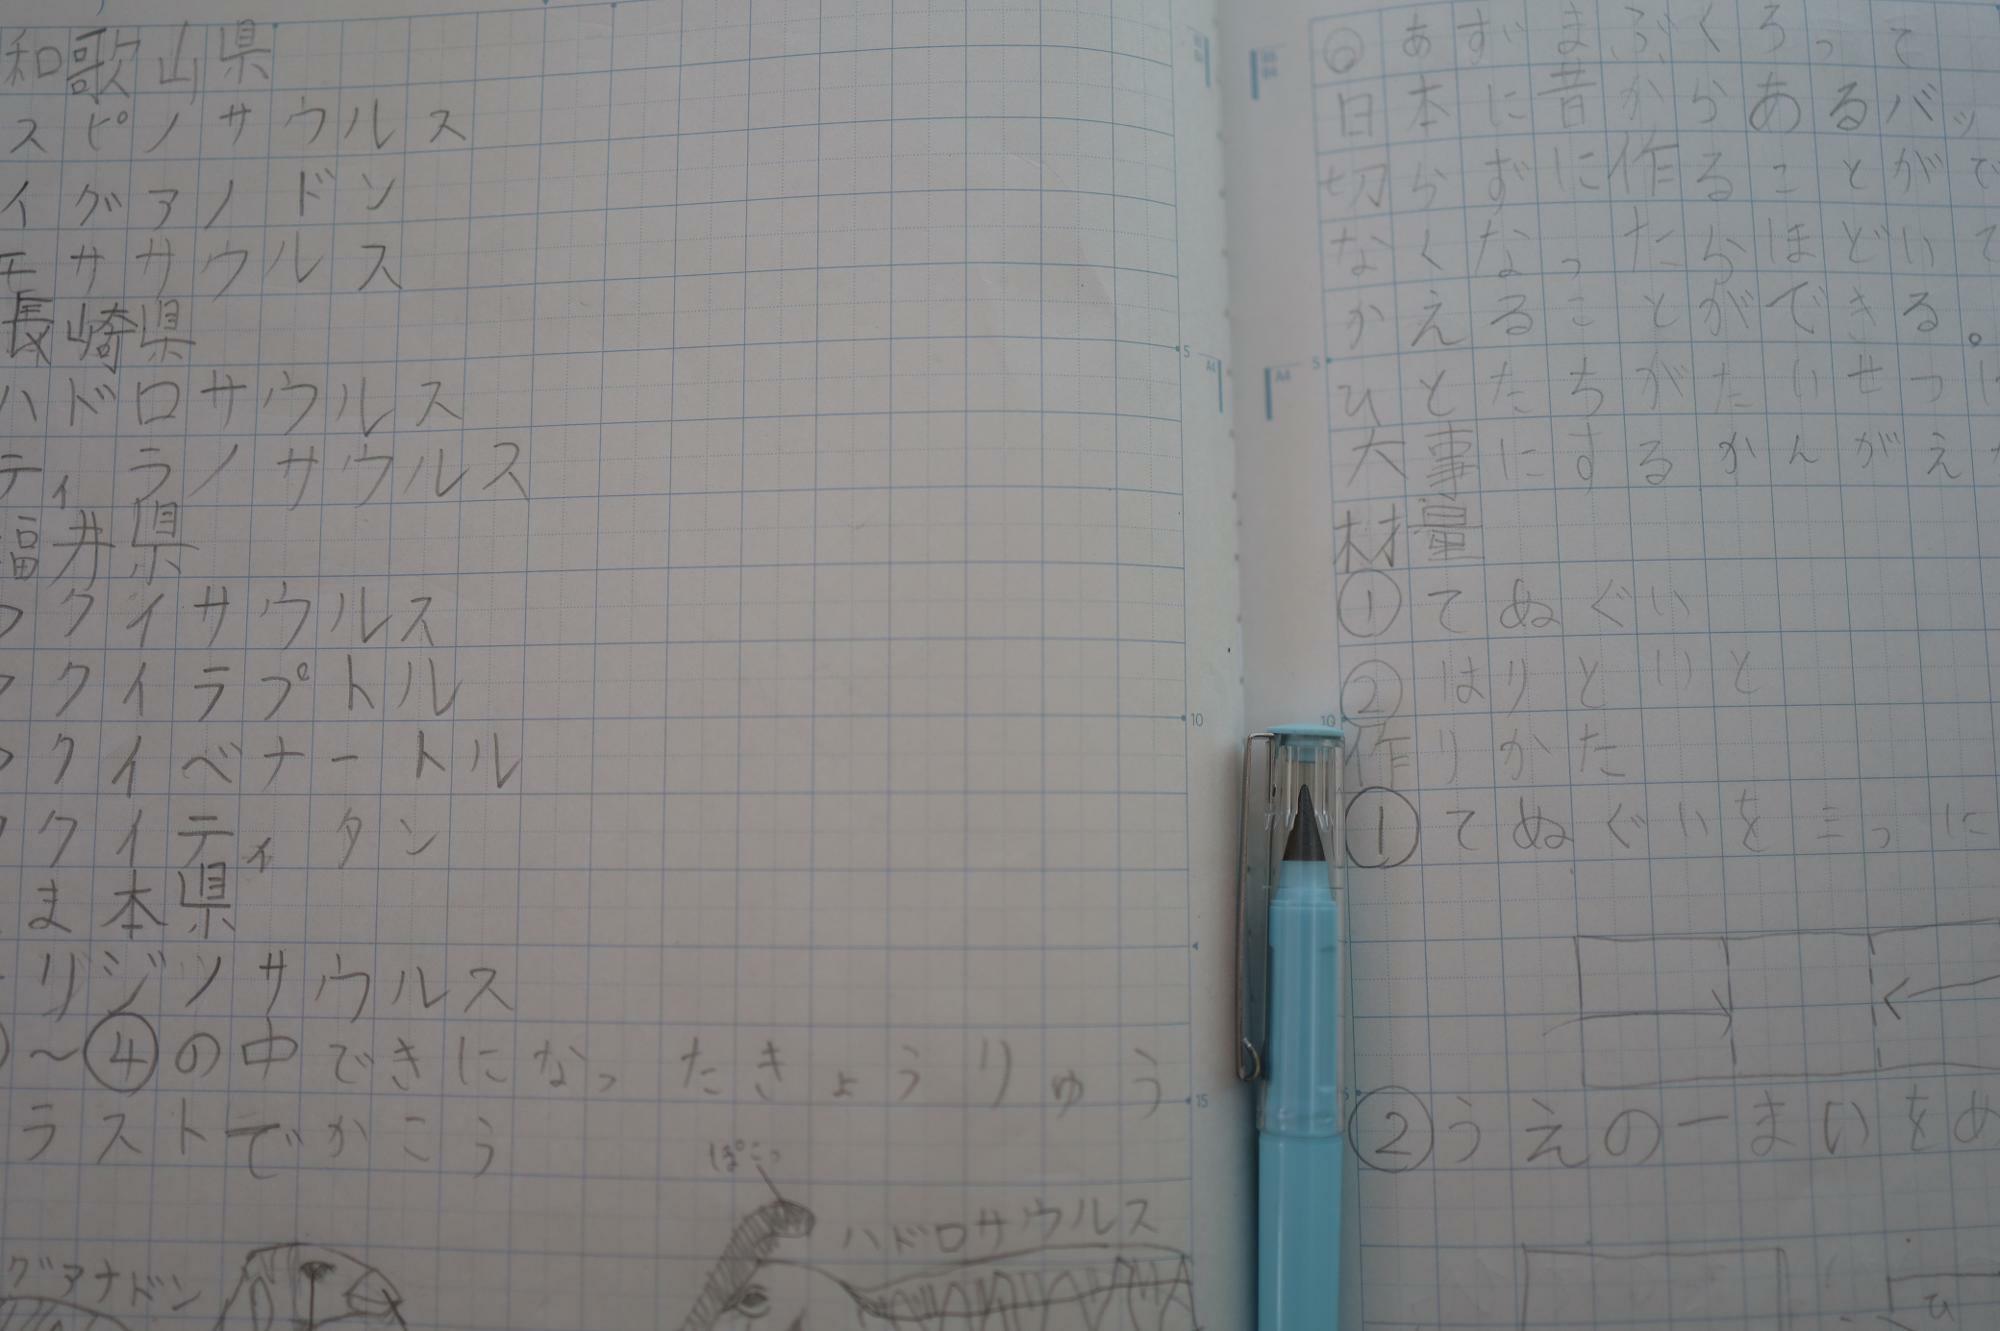 左のページが普段おうち学習で使っていたロケット鉛筆、右がコークスペン